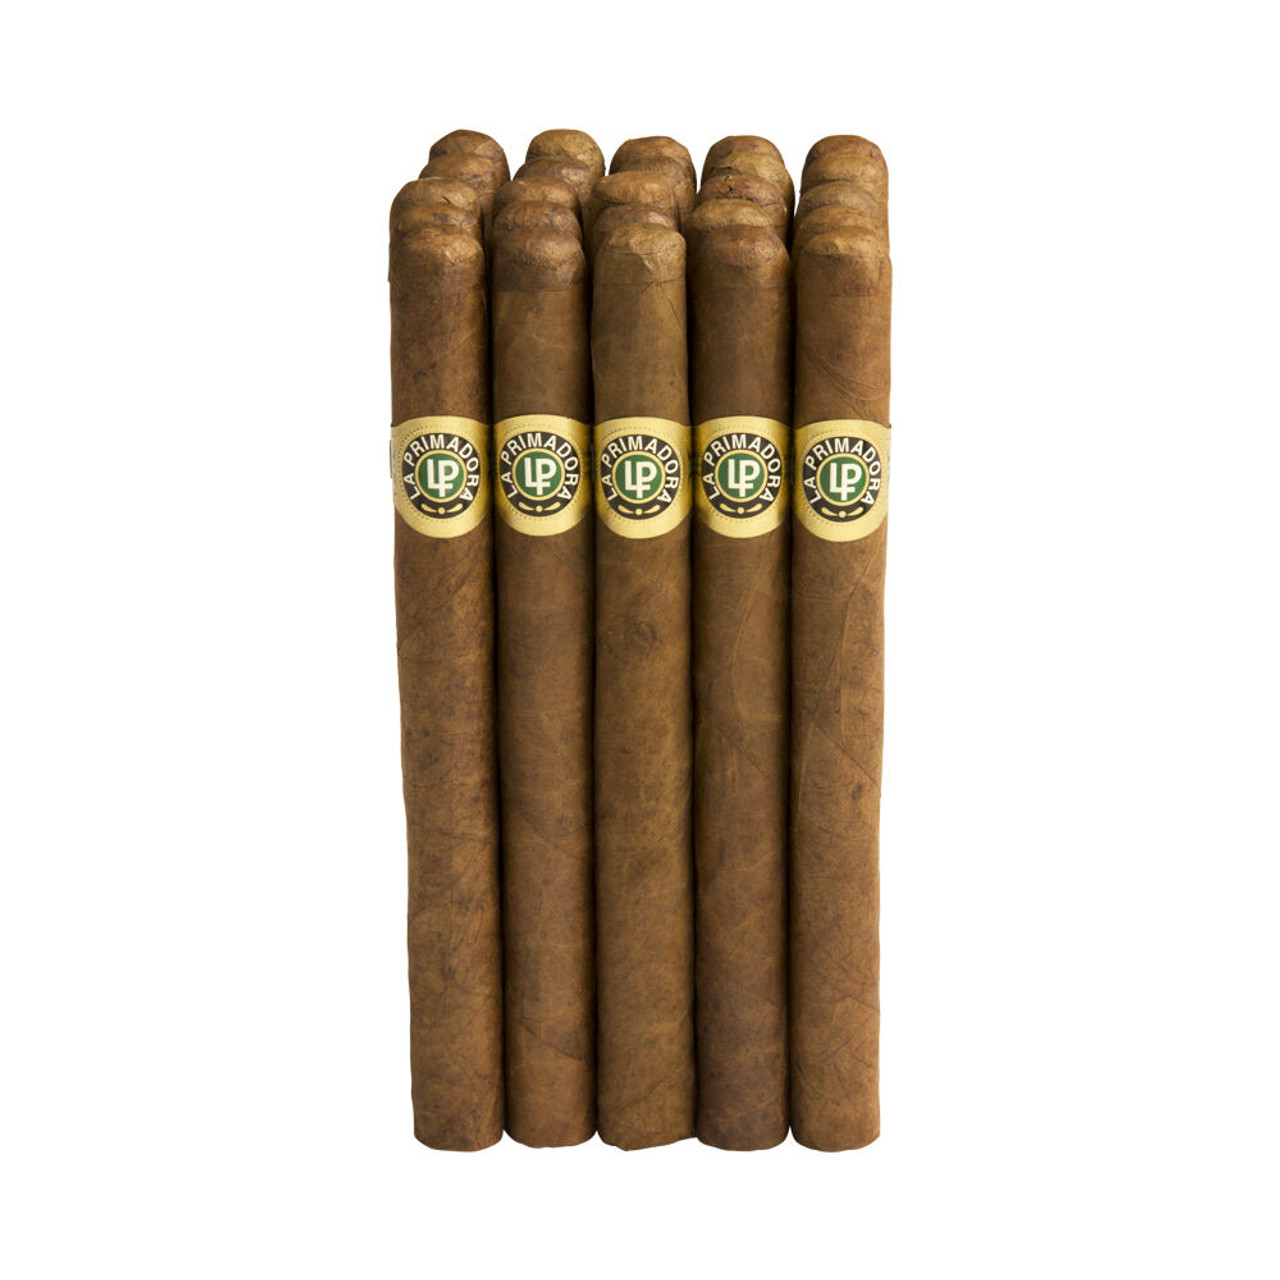 La Primadora Excellente Natural Cigars - 6 1/2 x 42 (Bundle of 25)